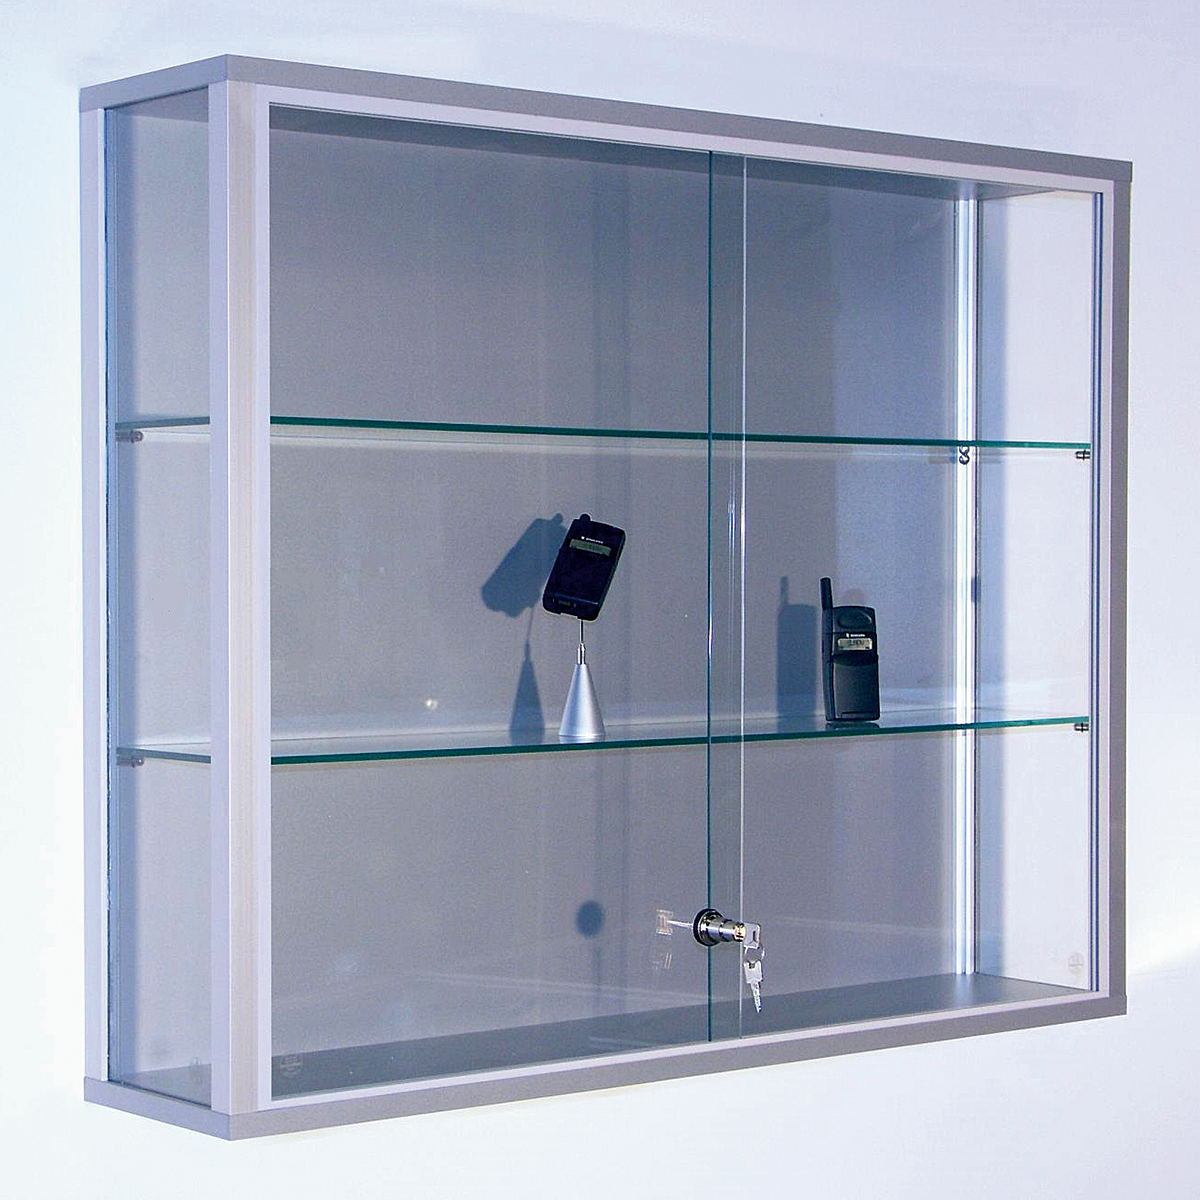 Витрина настенная ref.45 IDC. SS 603 стеклянная витрина. Витрина Glass Showcase. Шкаф витрина алюминий стекло 800мм 2000.